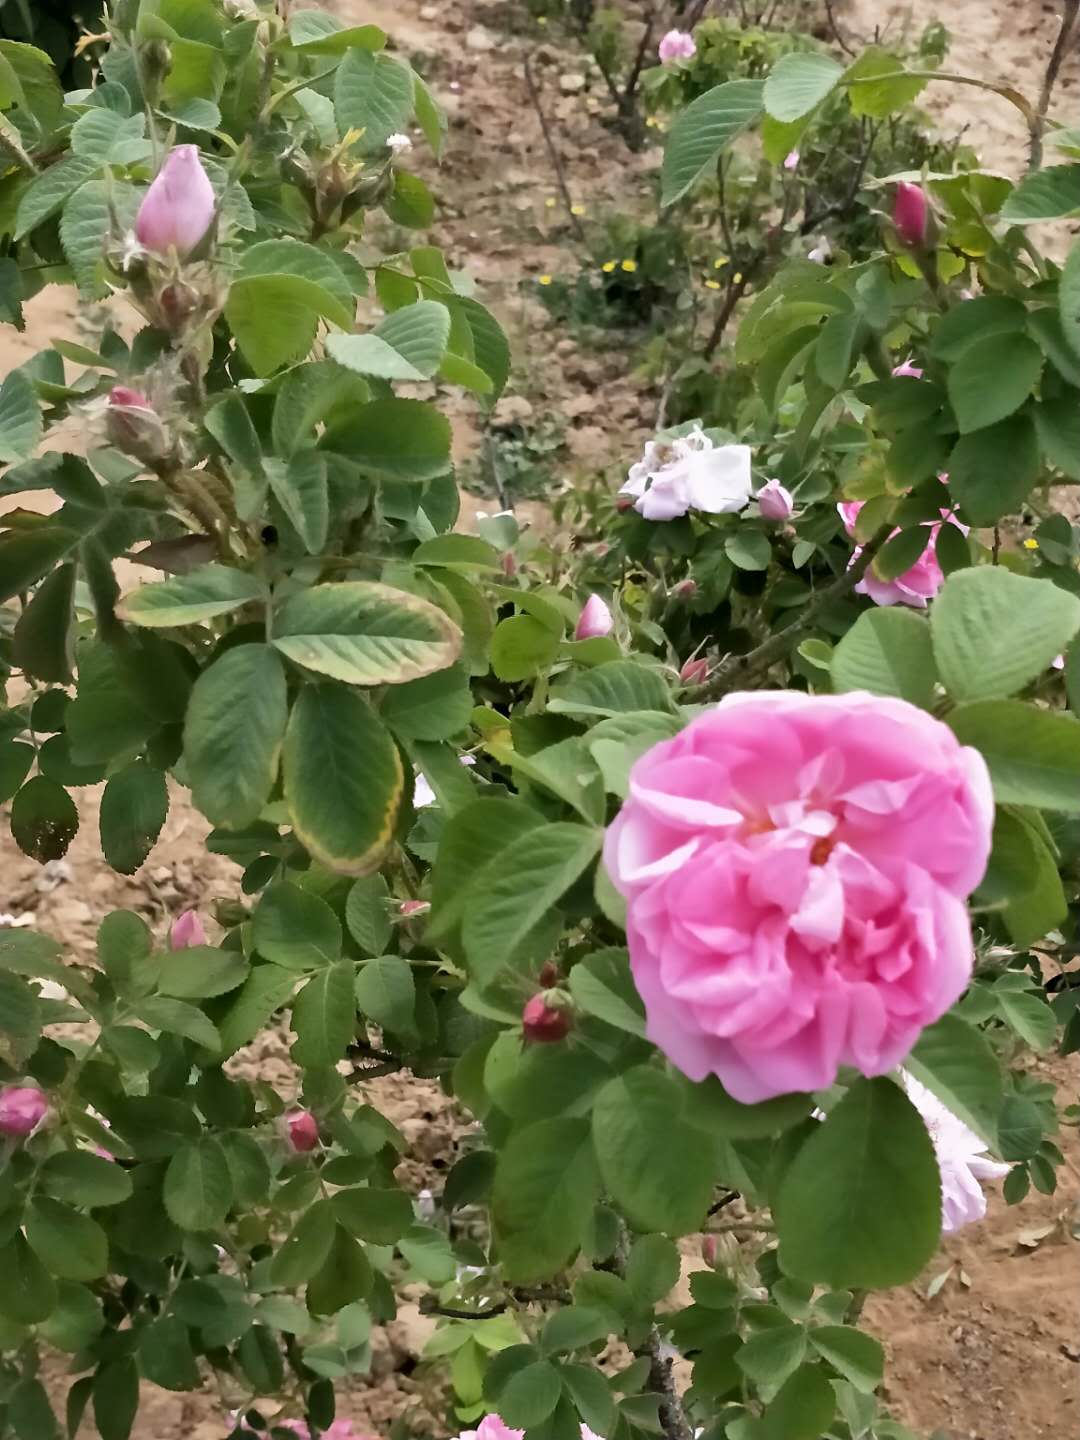 法兰西玫瑰苗种植基地法兰西玫瑰苗种植基地  法兰西玫瑰苗价格 法兰西玫瑰苗批发